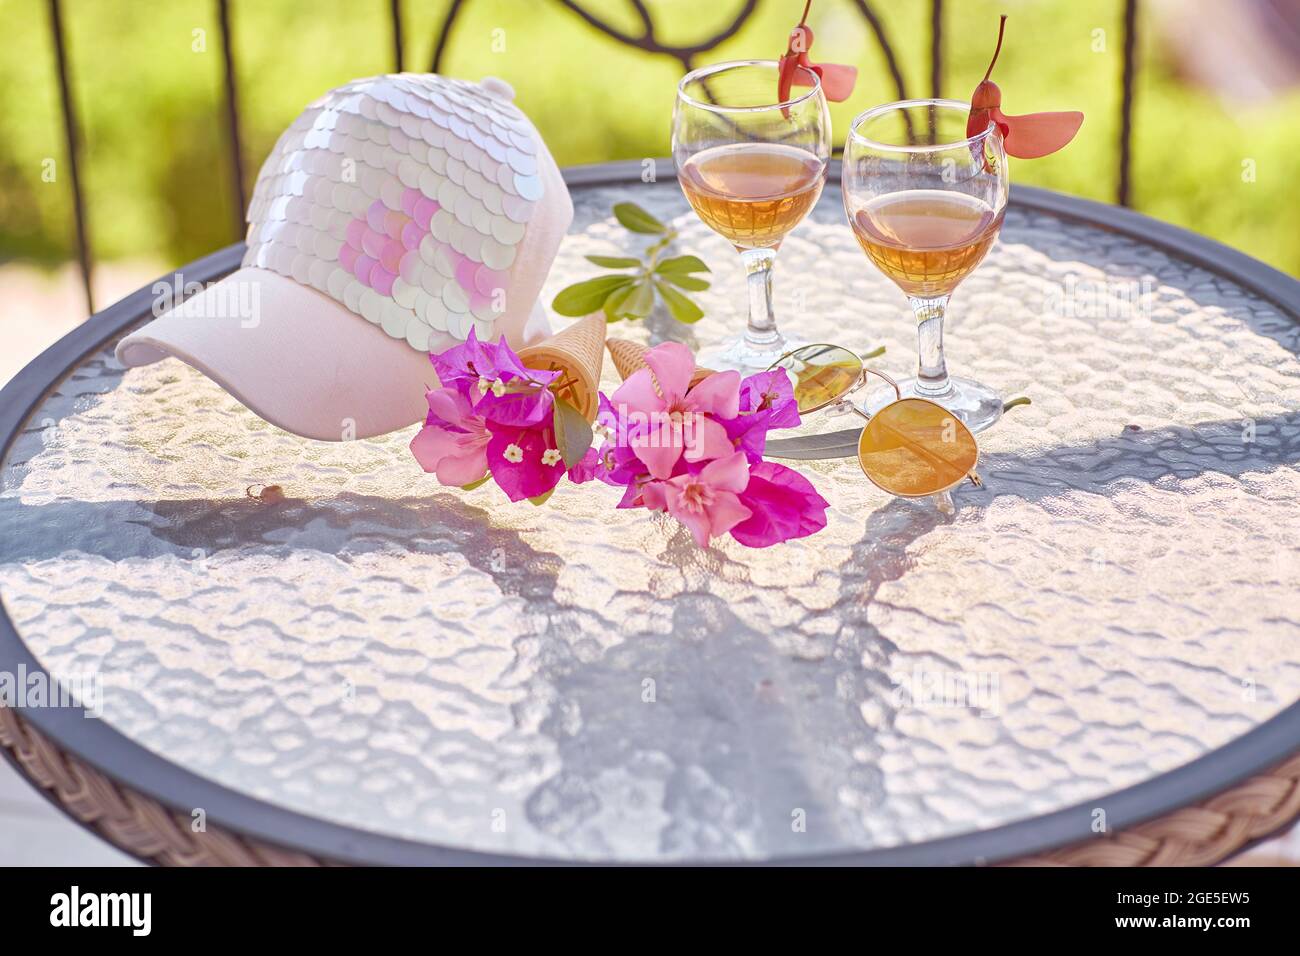 Gläser von rosafarbenem Wein, rosa Blüten von Bougainvillea und helle Frauenmütze. Sommer trendy kreative Konzept der Ferien. Hochwertige Fotos Stockfoto